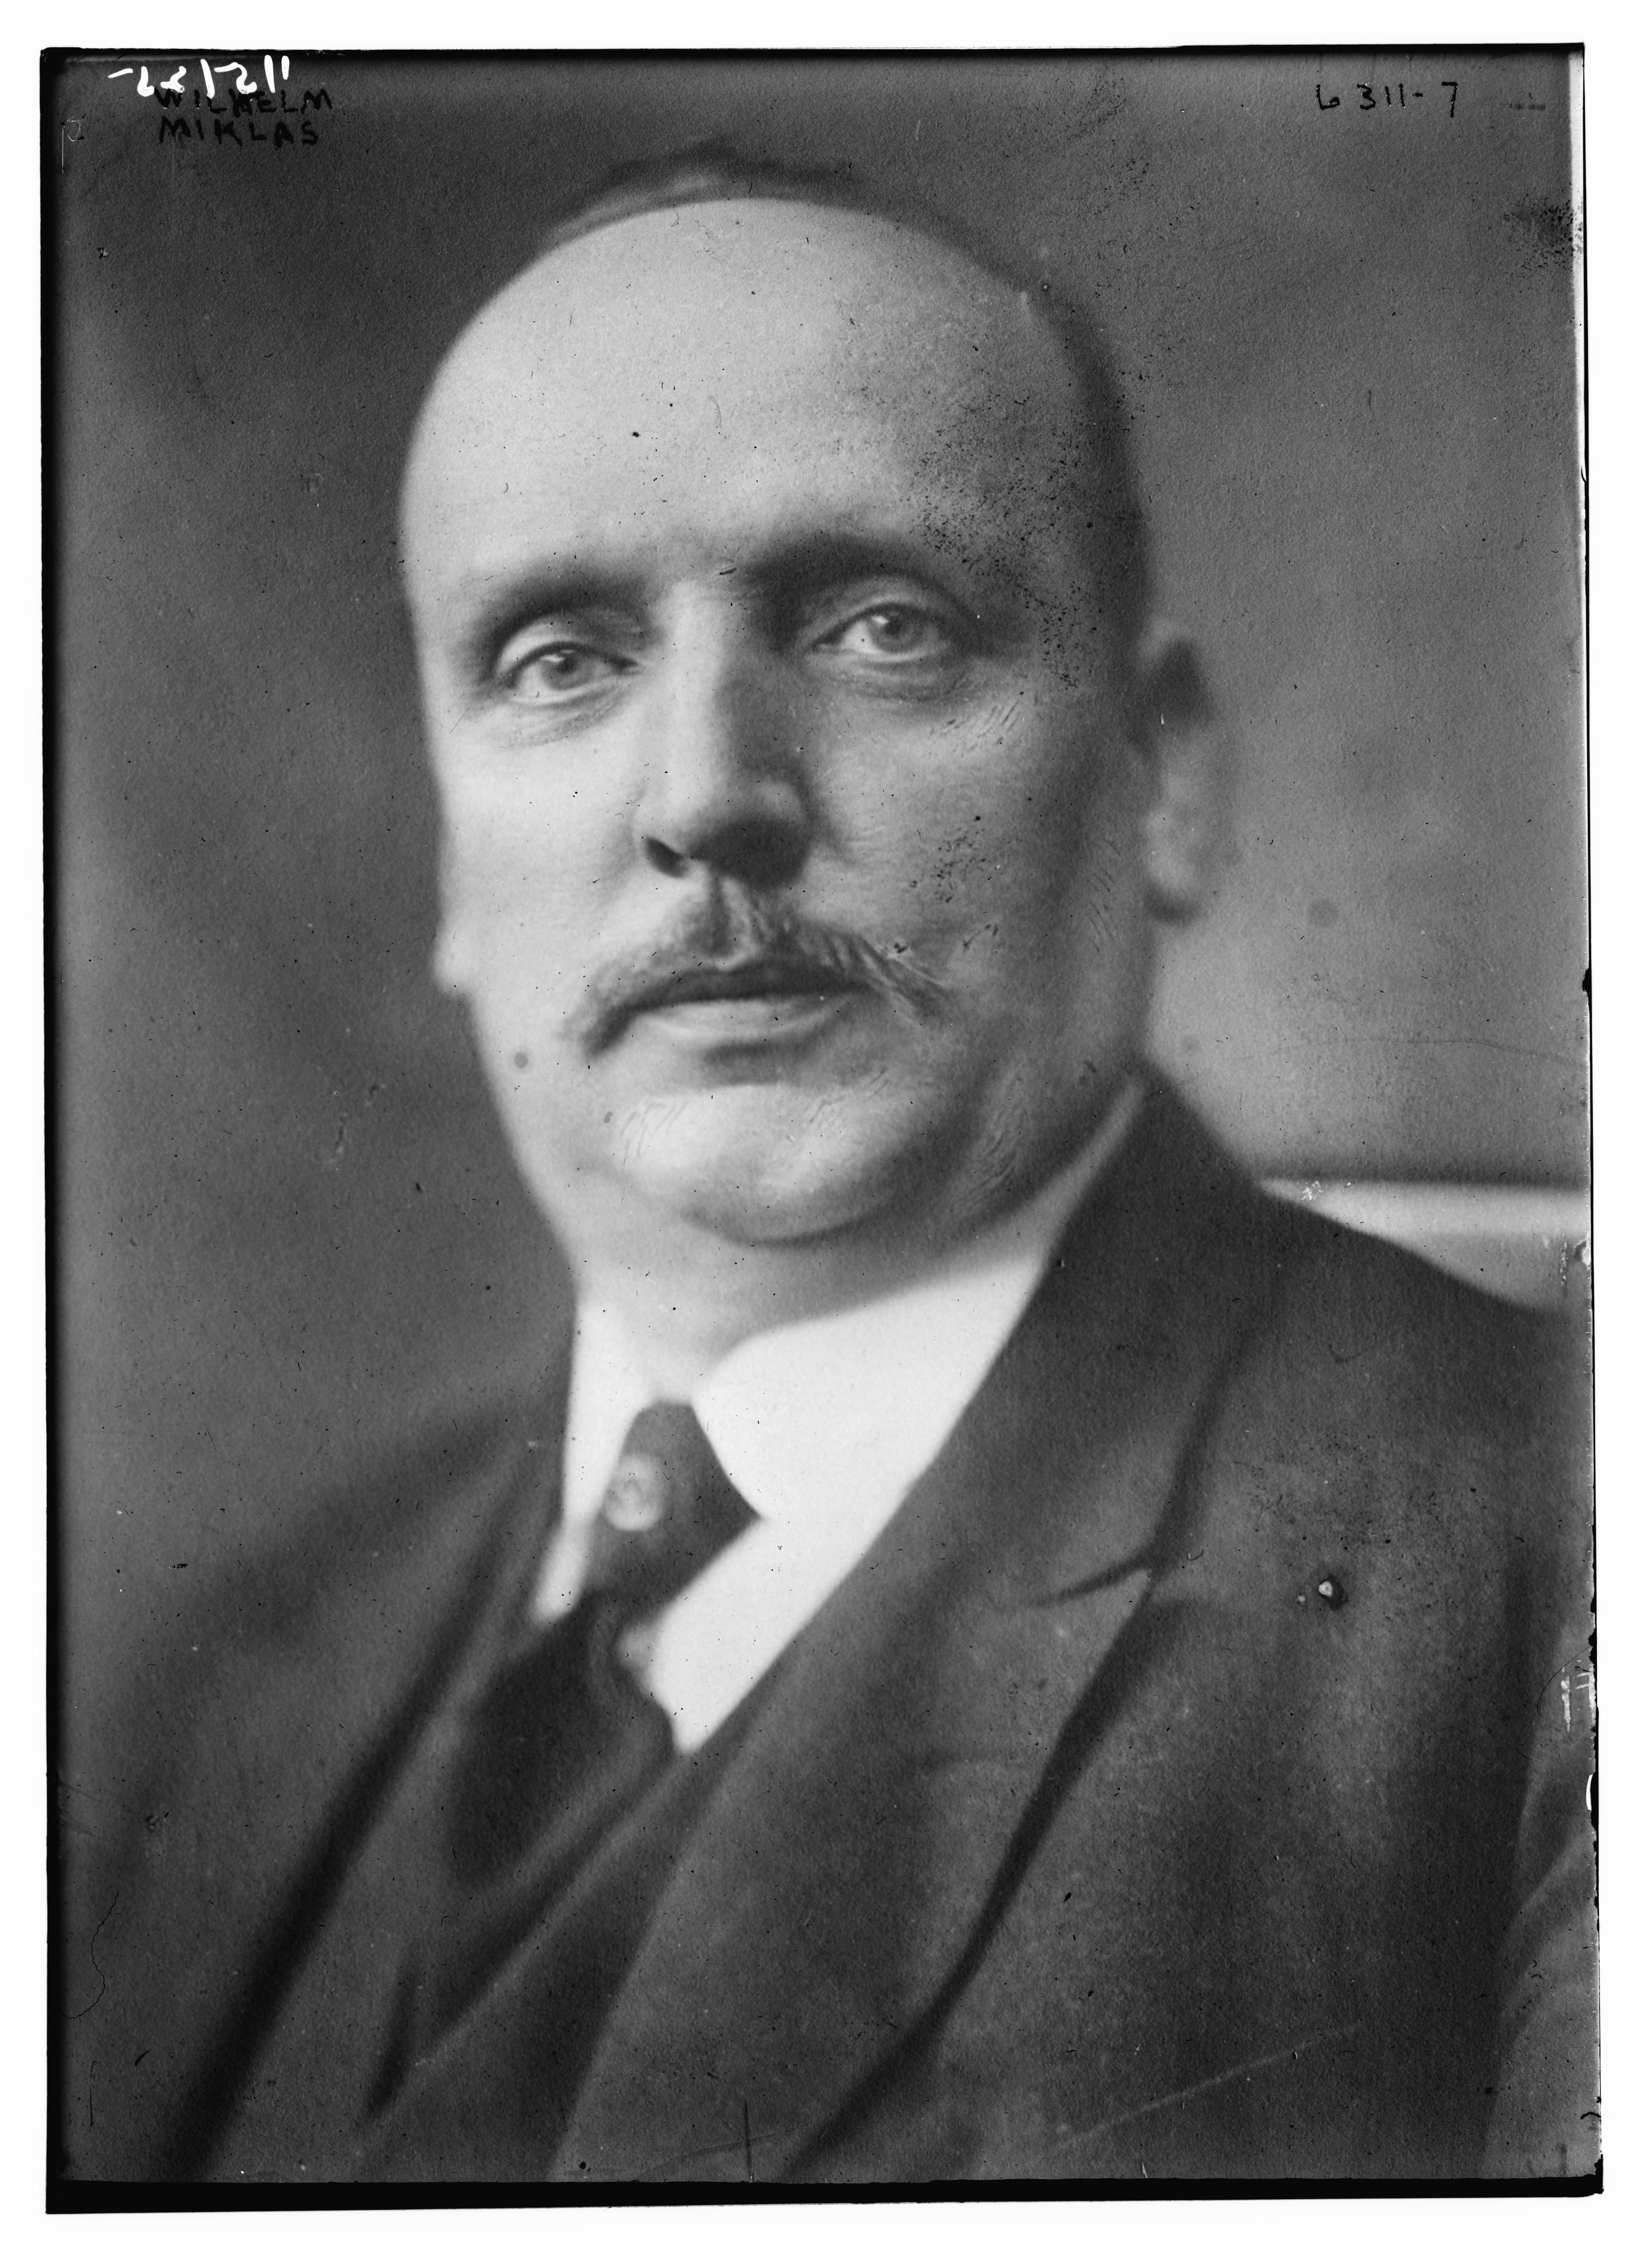 Image of Wilhelm Miklas